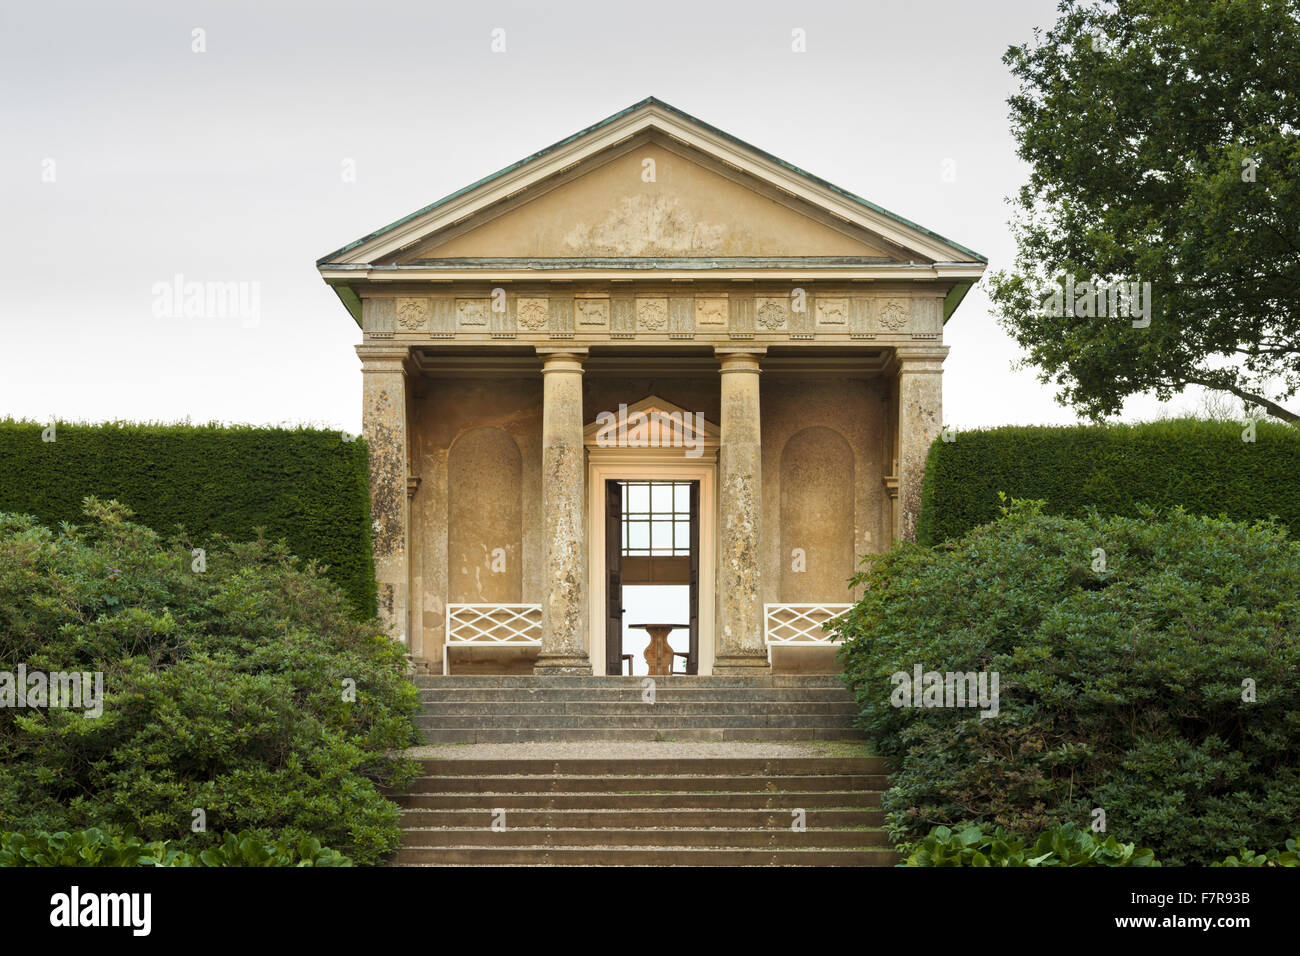 Der Tempel in Blickling Estate, Norfolk. Blickling ist ein Turm aus rotem Backstein jakobinischen Herrenhaus, sitzen in wunderschönen Gärten und Parks. Stockfoto